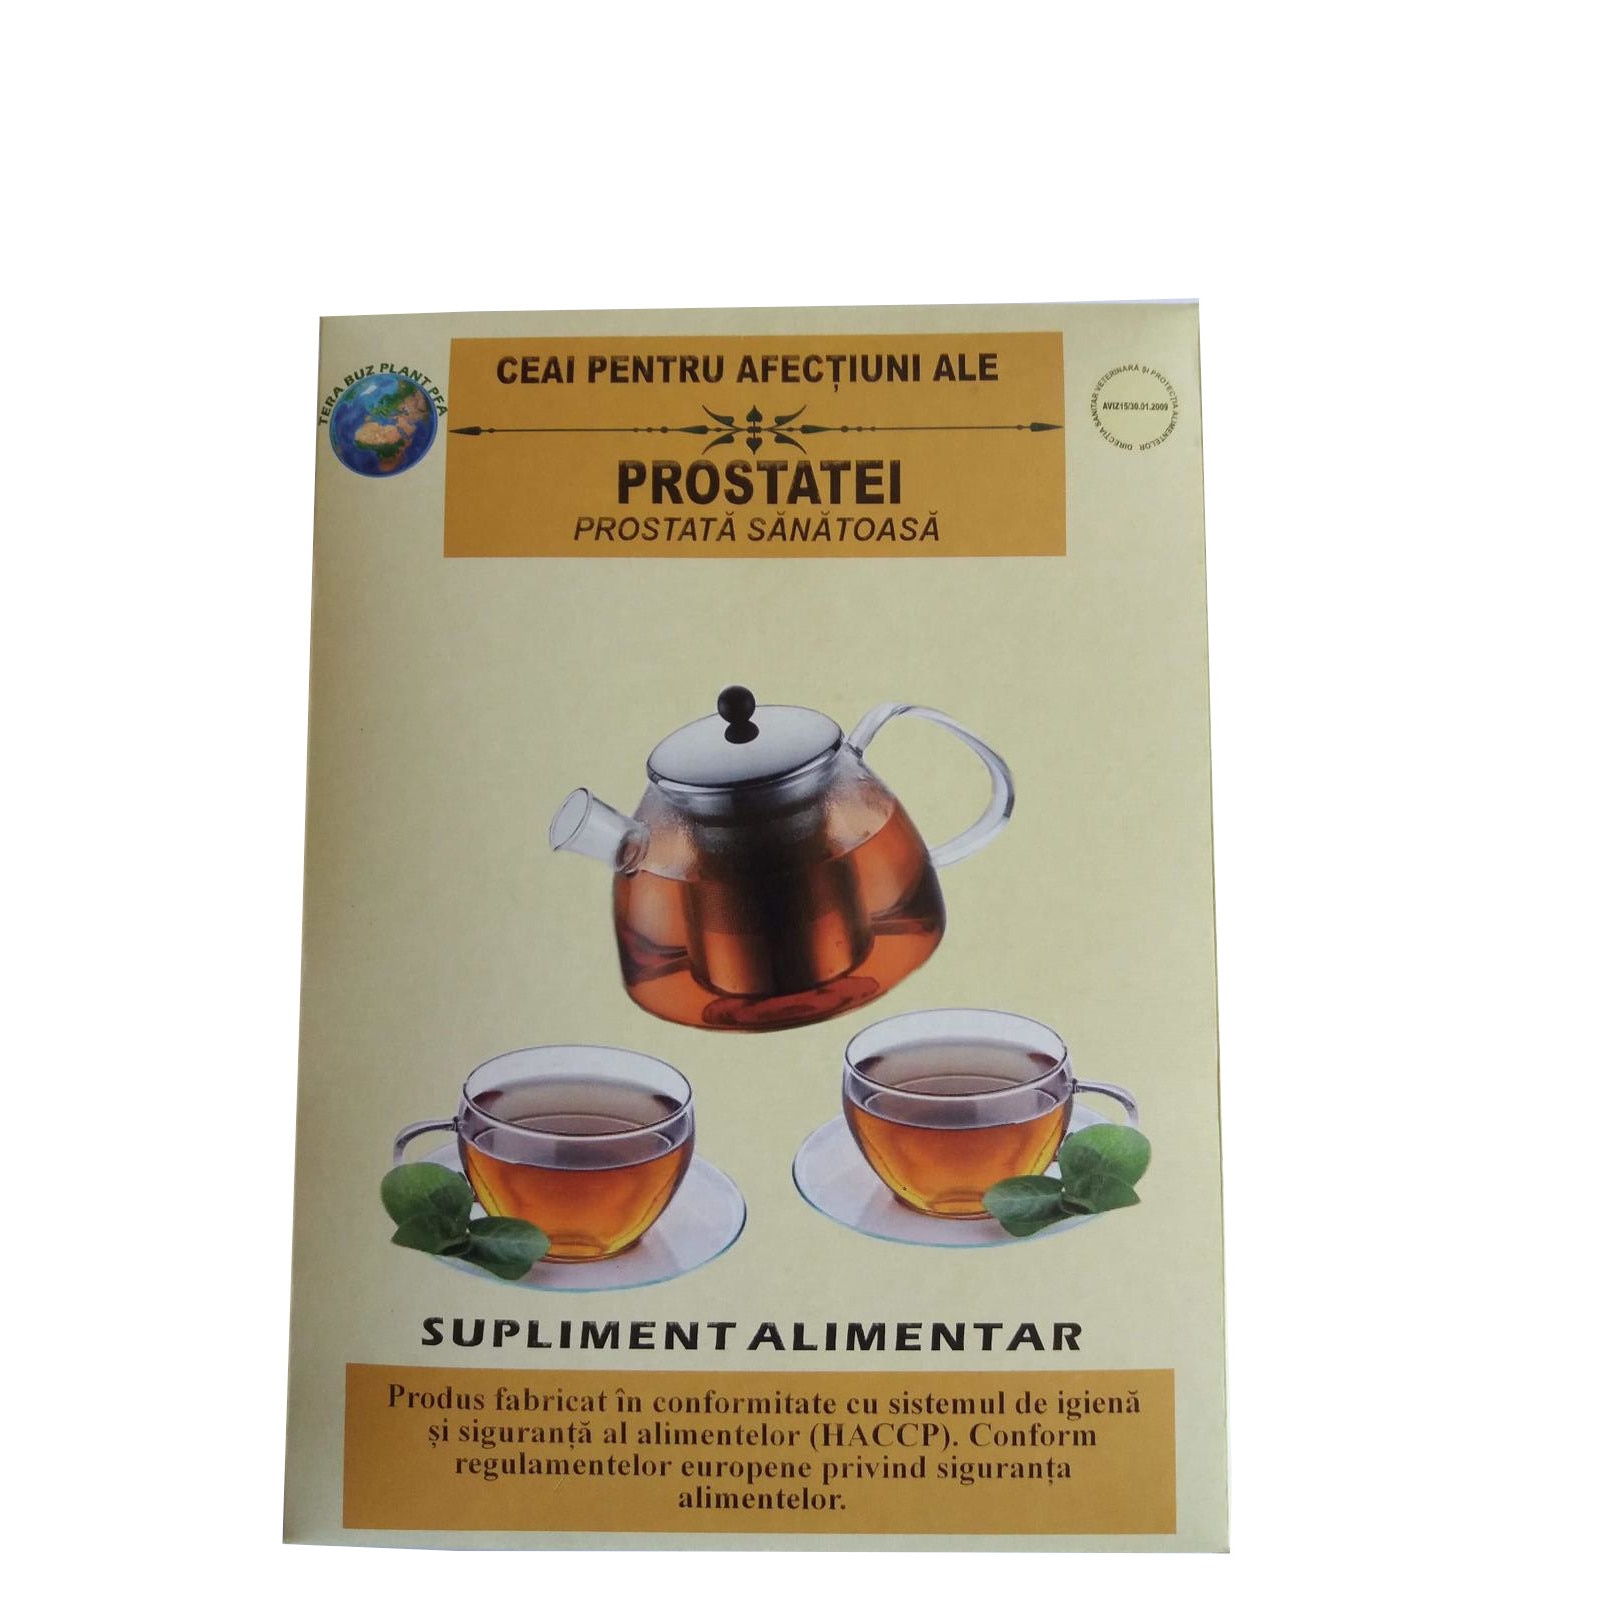 Ceai din plante Sănătatea prostatei, 50 g, Dacia Plant